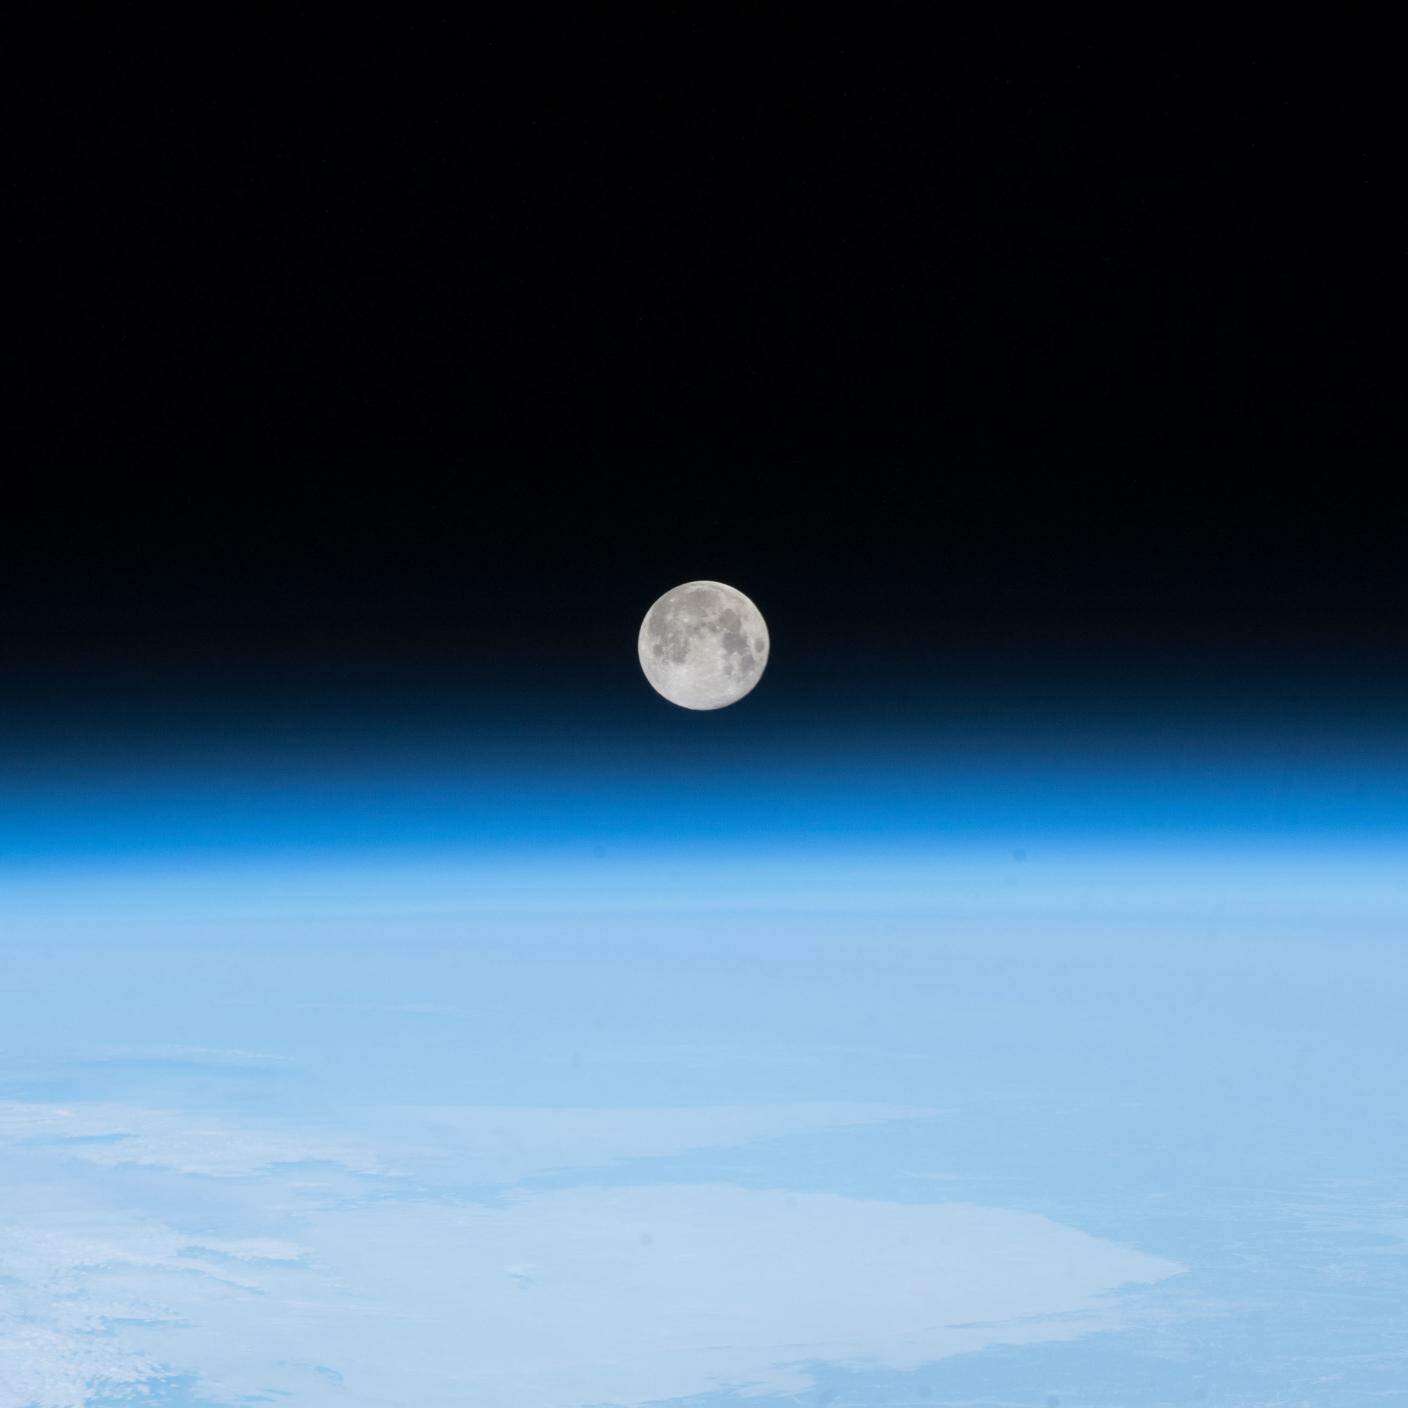 L'equipaggio della Stazione Spaziale Internazionale ha fotografato questa immagine della luna piena il 30 aprile 2018